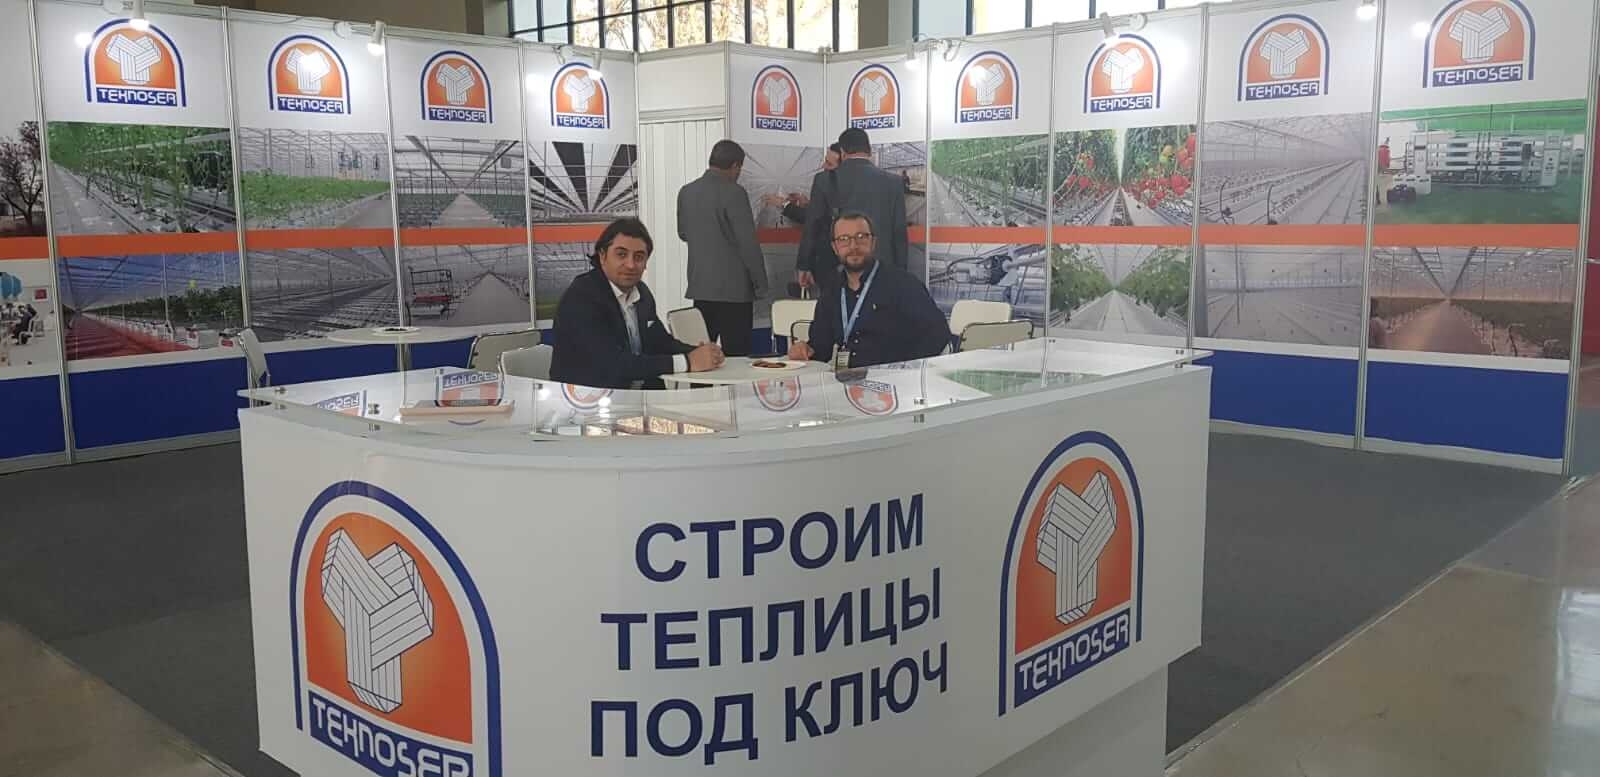 معرض الزراعة Agroworld أوزبكستان طشقند 2019